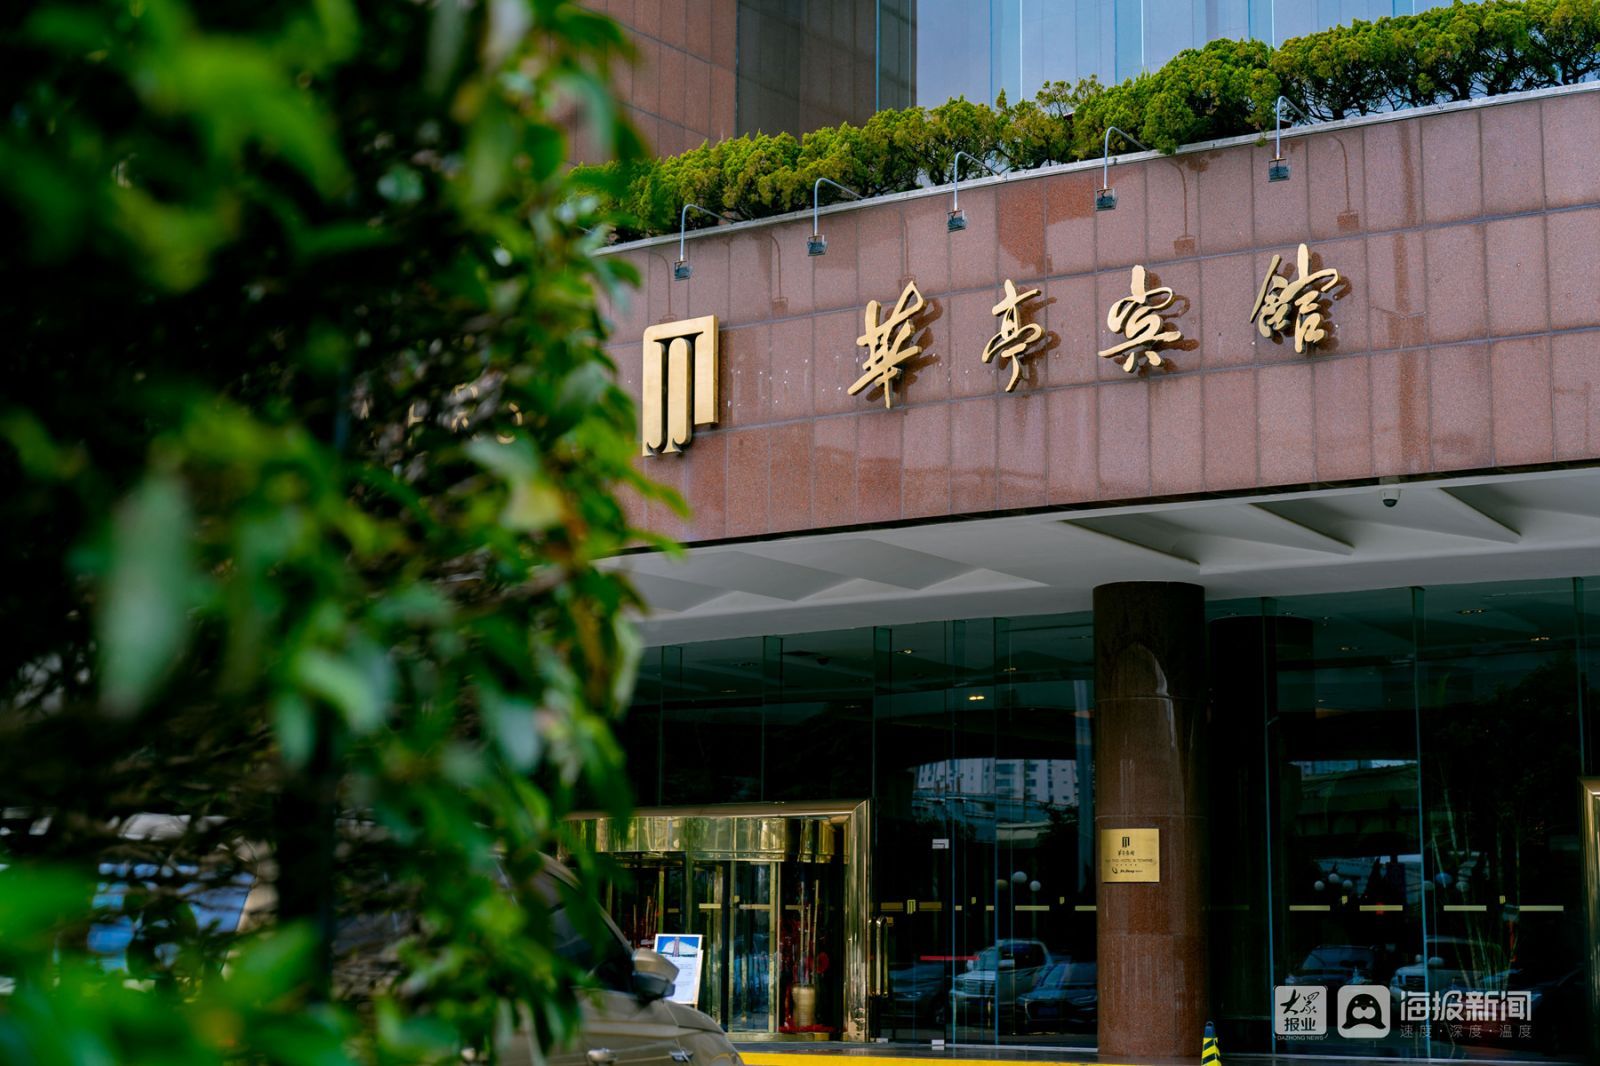 上海首个涉外奢华酒店华亭宾馆歇业改造